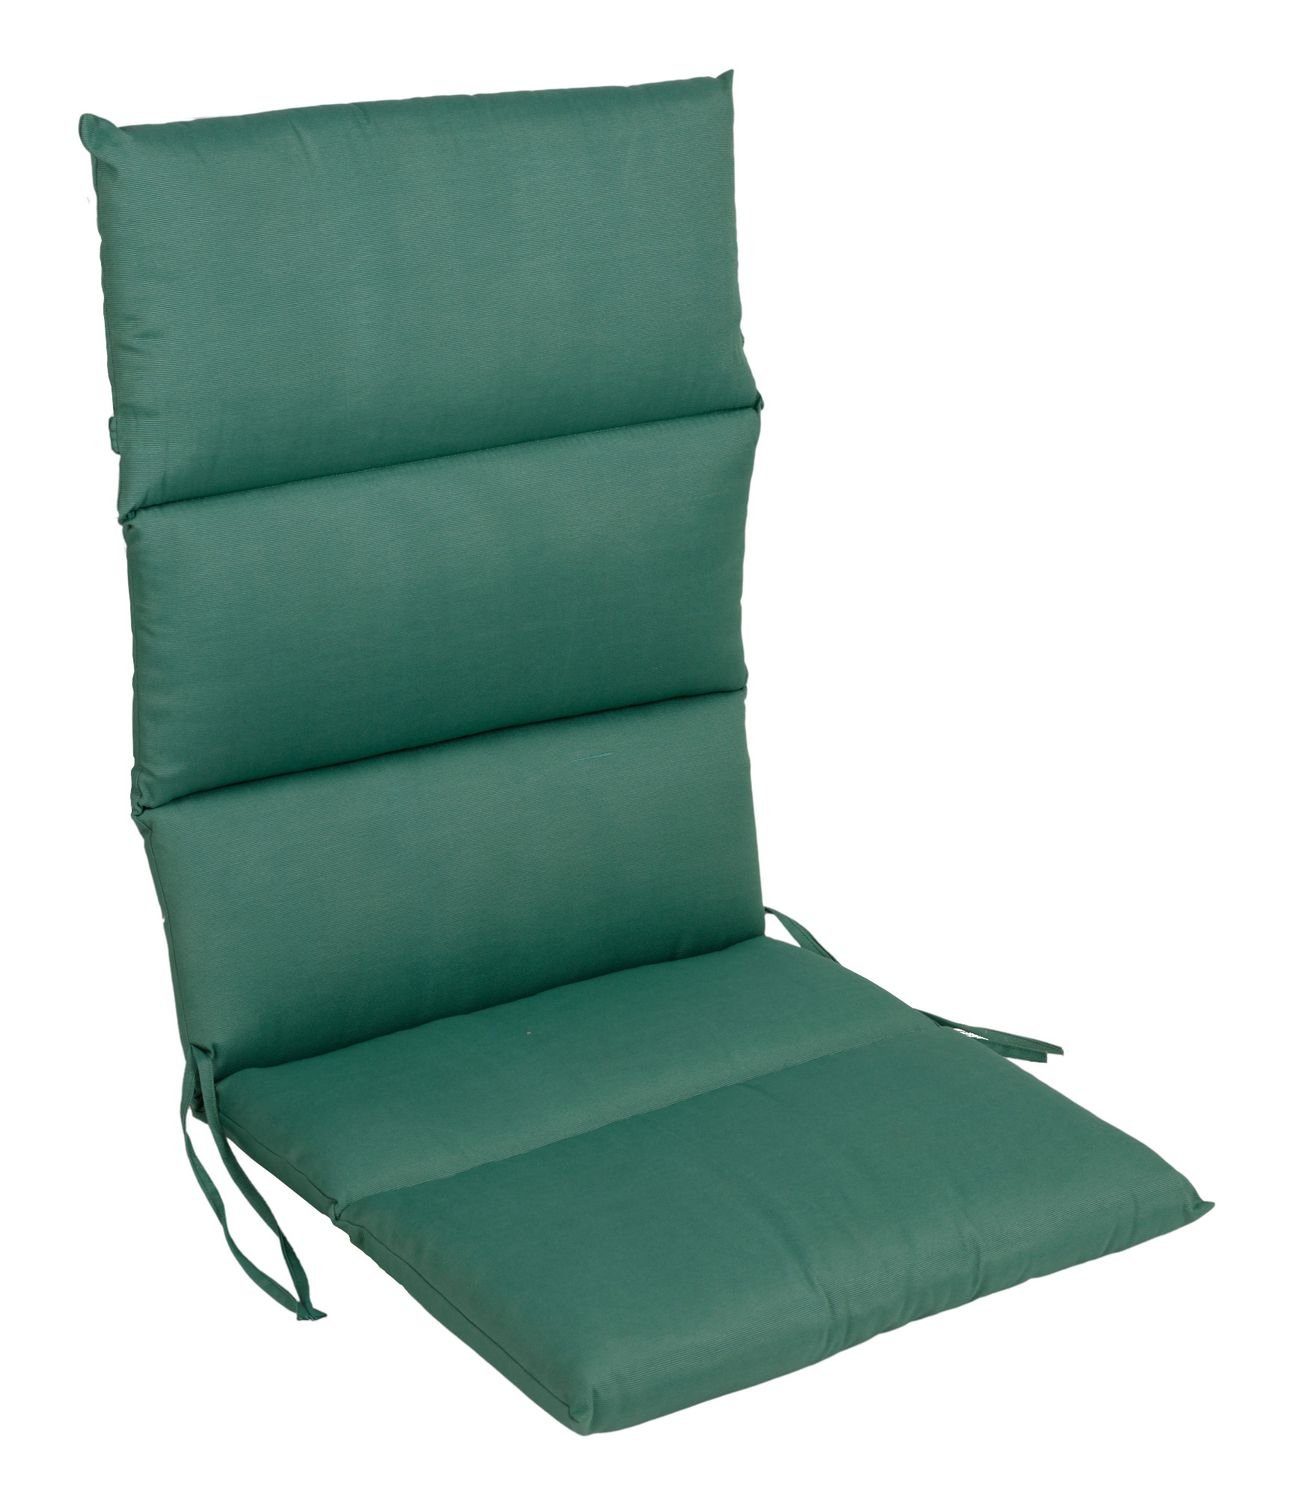 BURI Bankauflage Rollstepp Hochlehner Auflage Sesselauflage 123x50cm Polsterauflage Sit